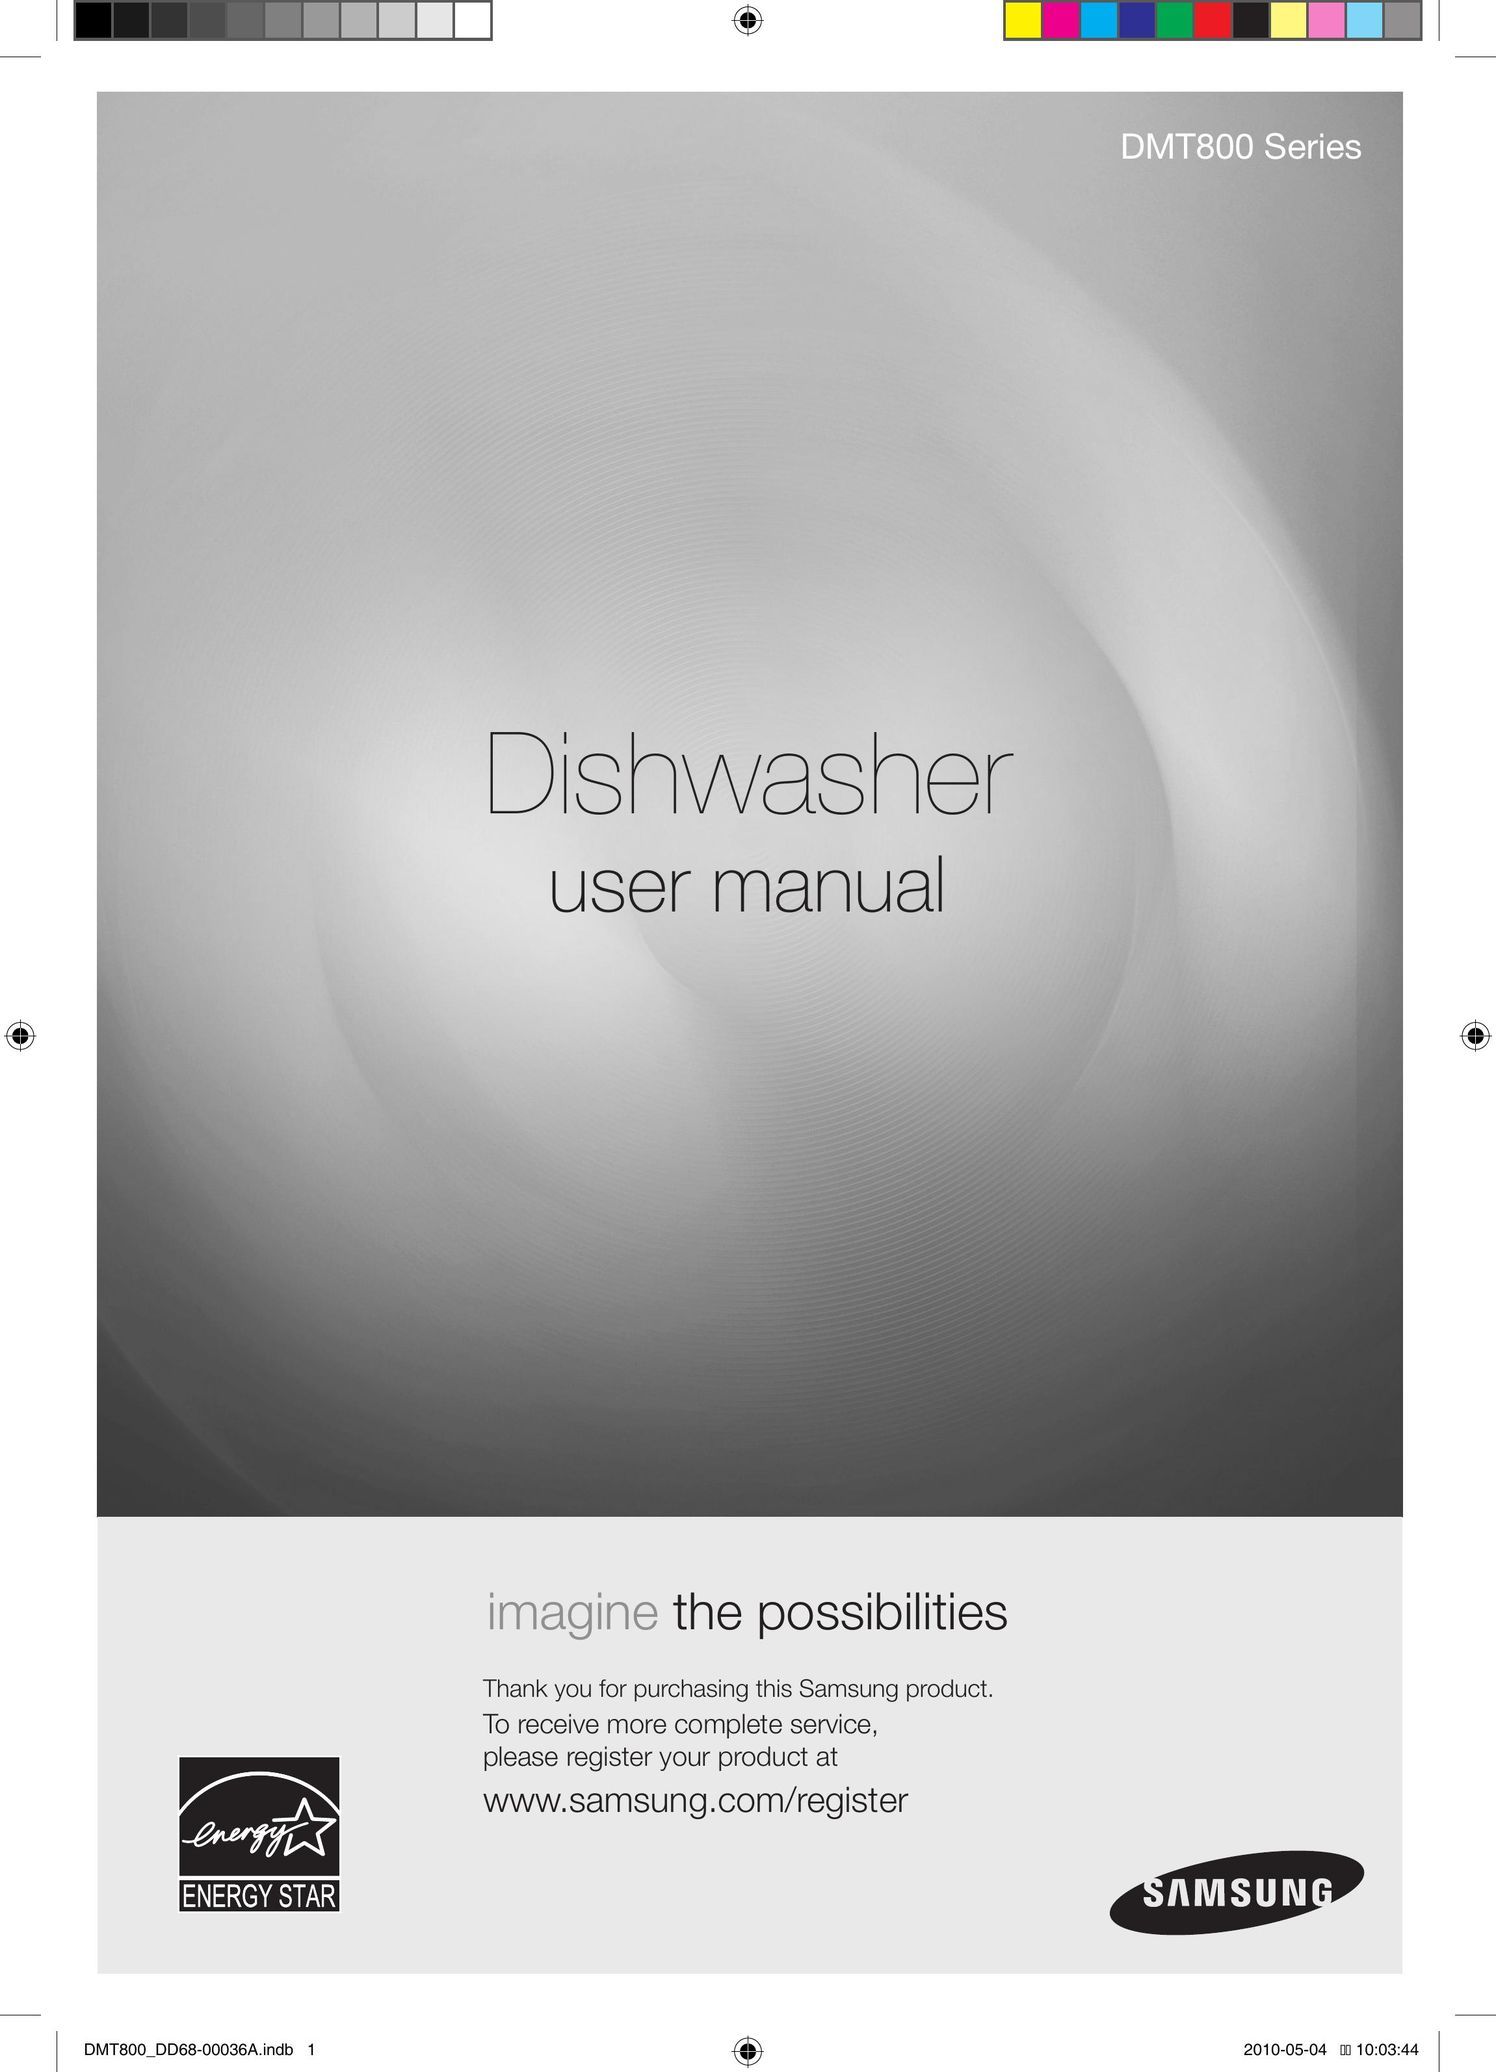 Samsung DMT800 Series Dishwasher User Manual